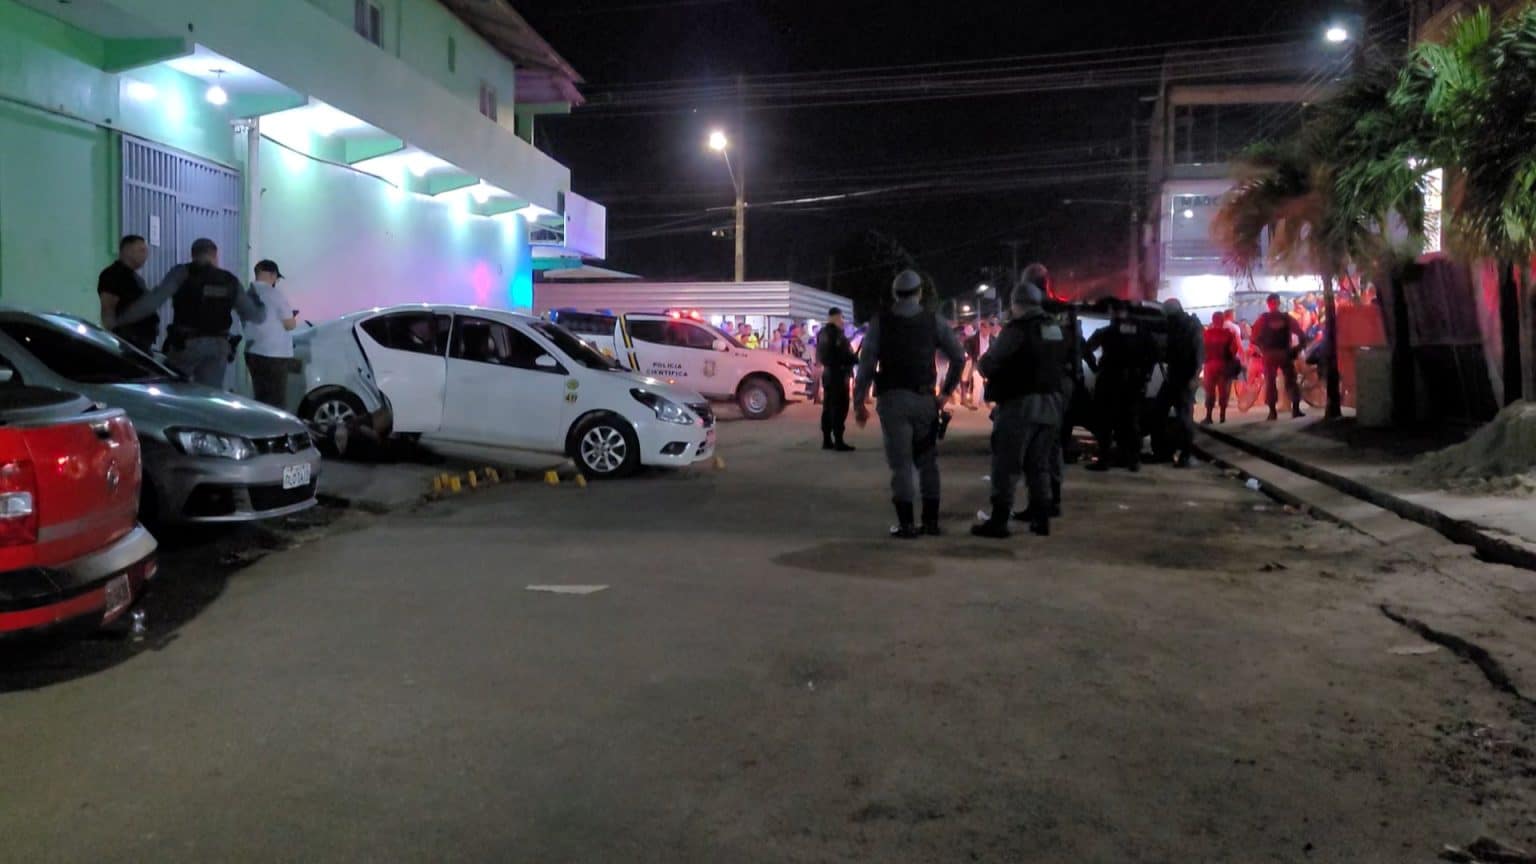 Taxista armado é morto durante abordagem policial